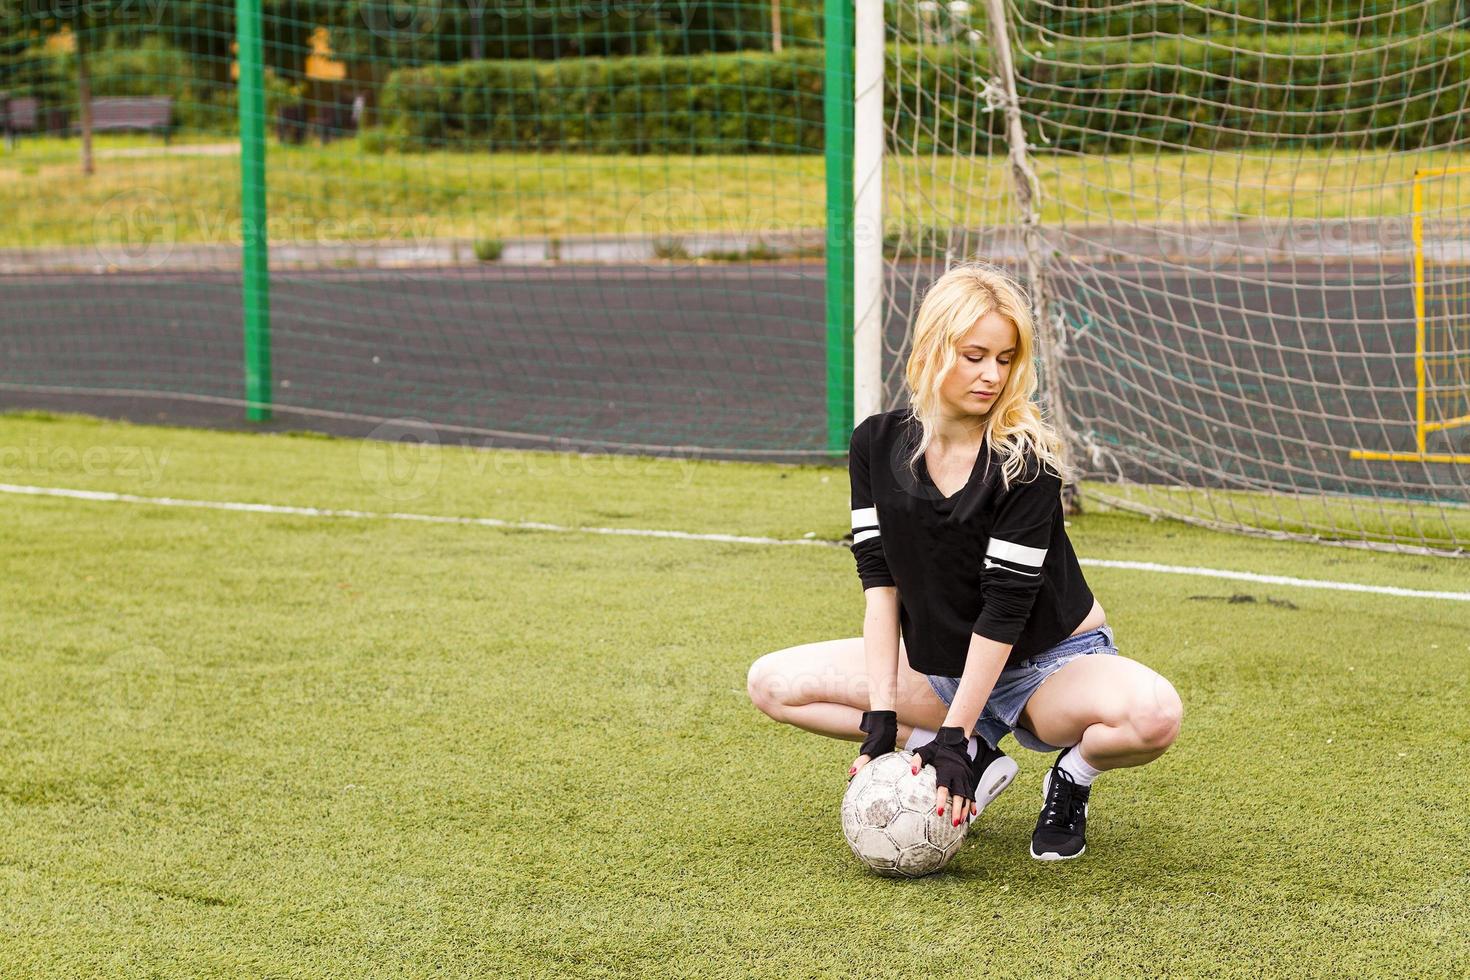 la ragazza è seduta sul campo di calcio con la palla. foto